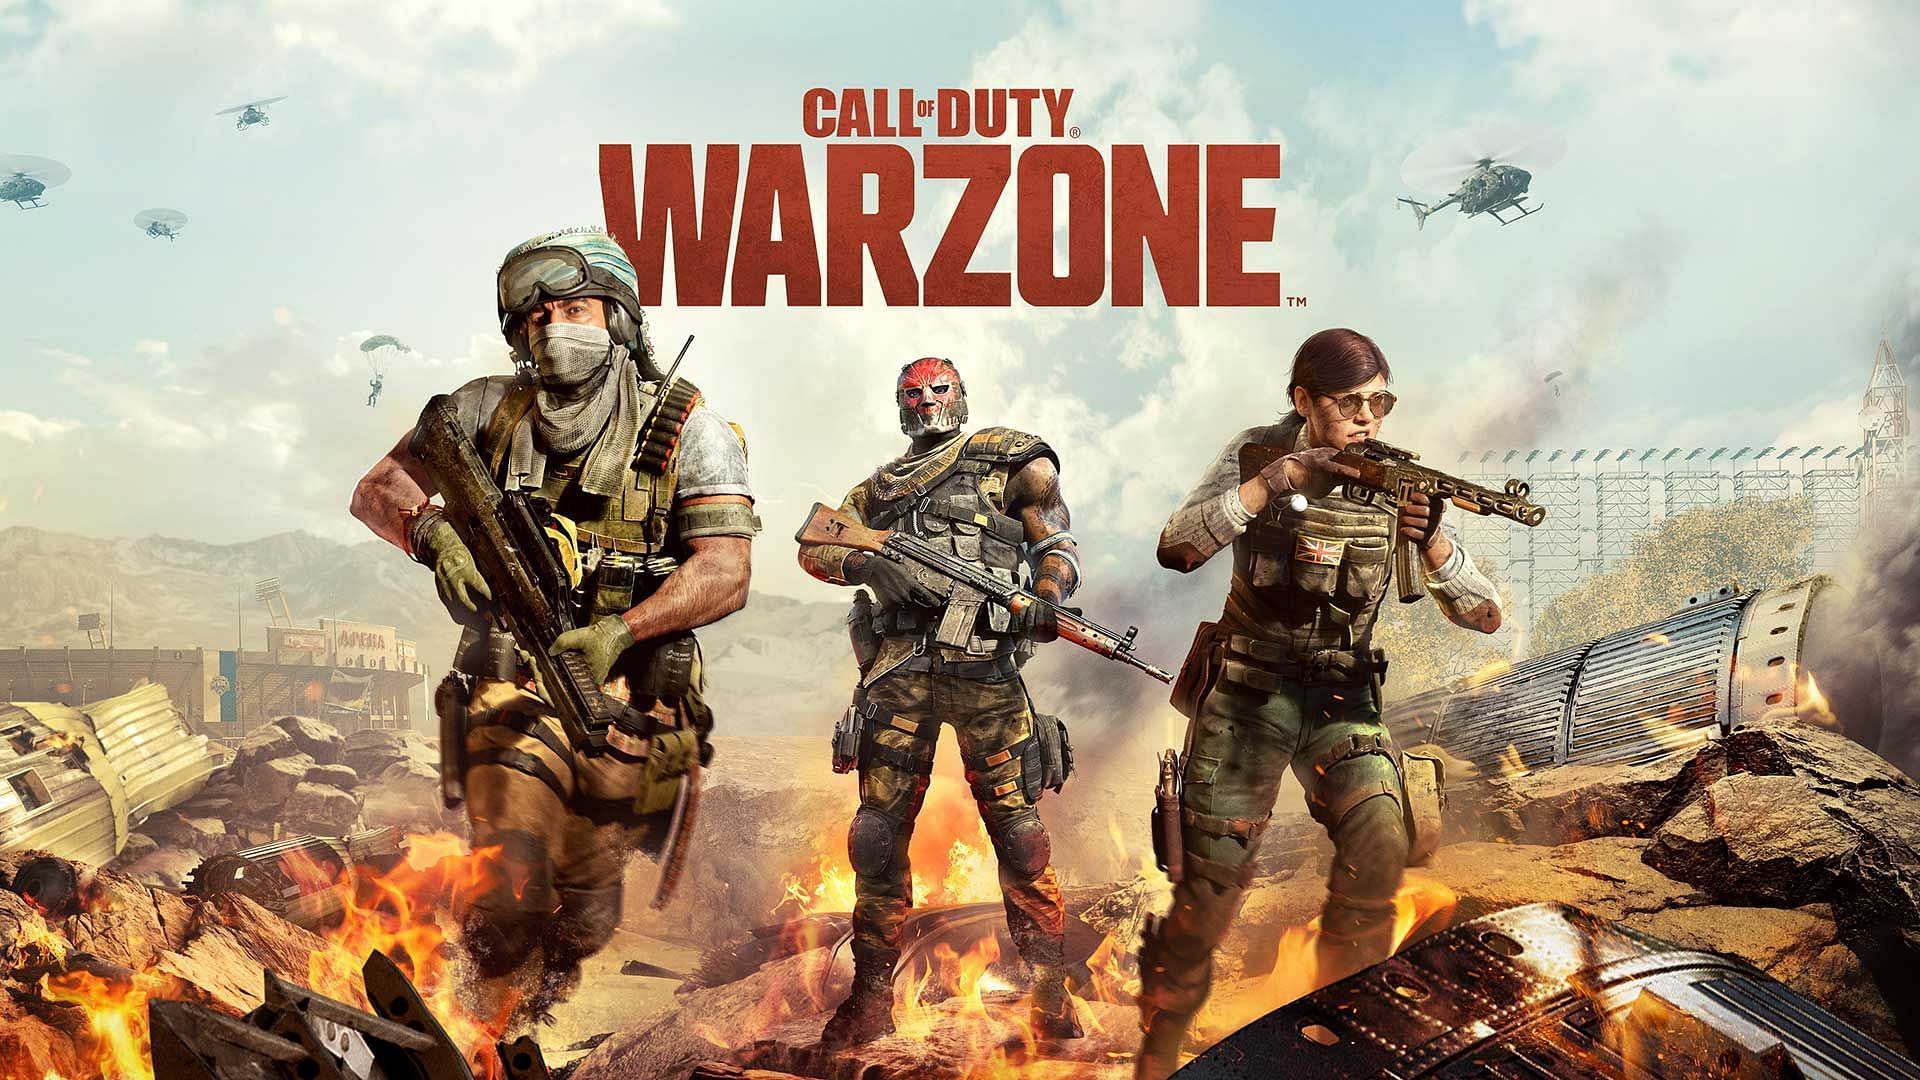 COD: Warzone Season 3 has a wide arsenal of guns (Image via Activision)